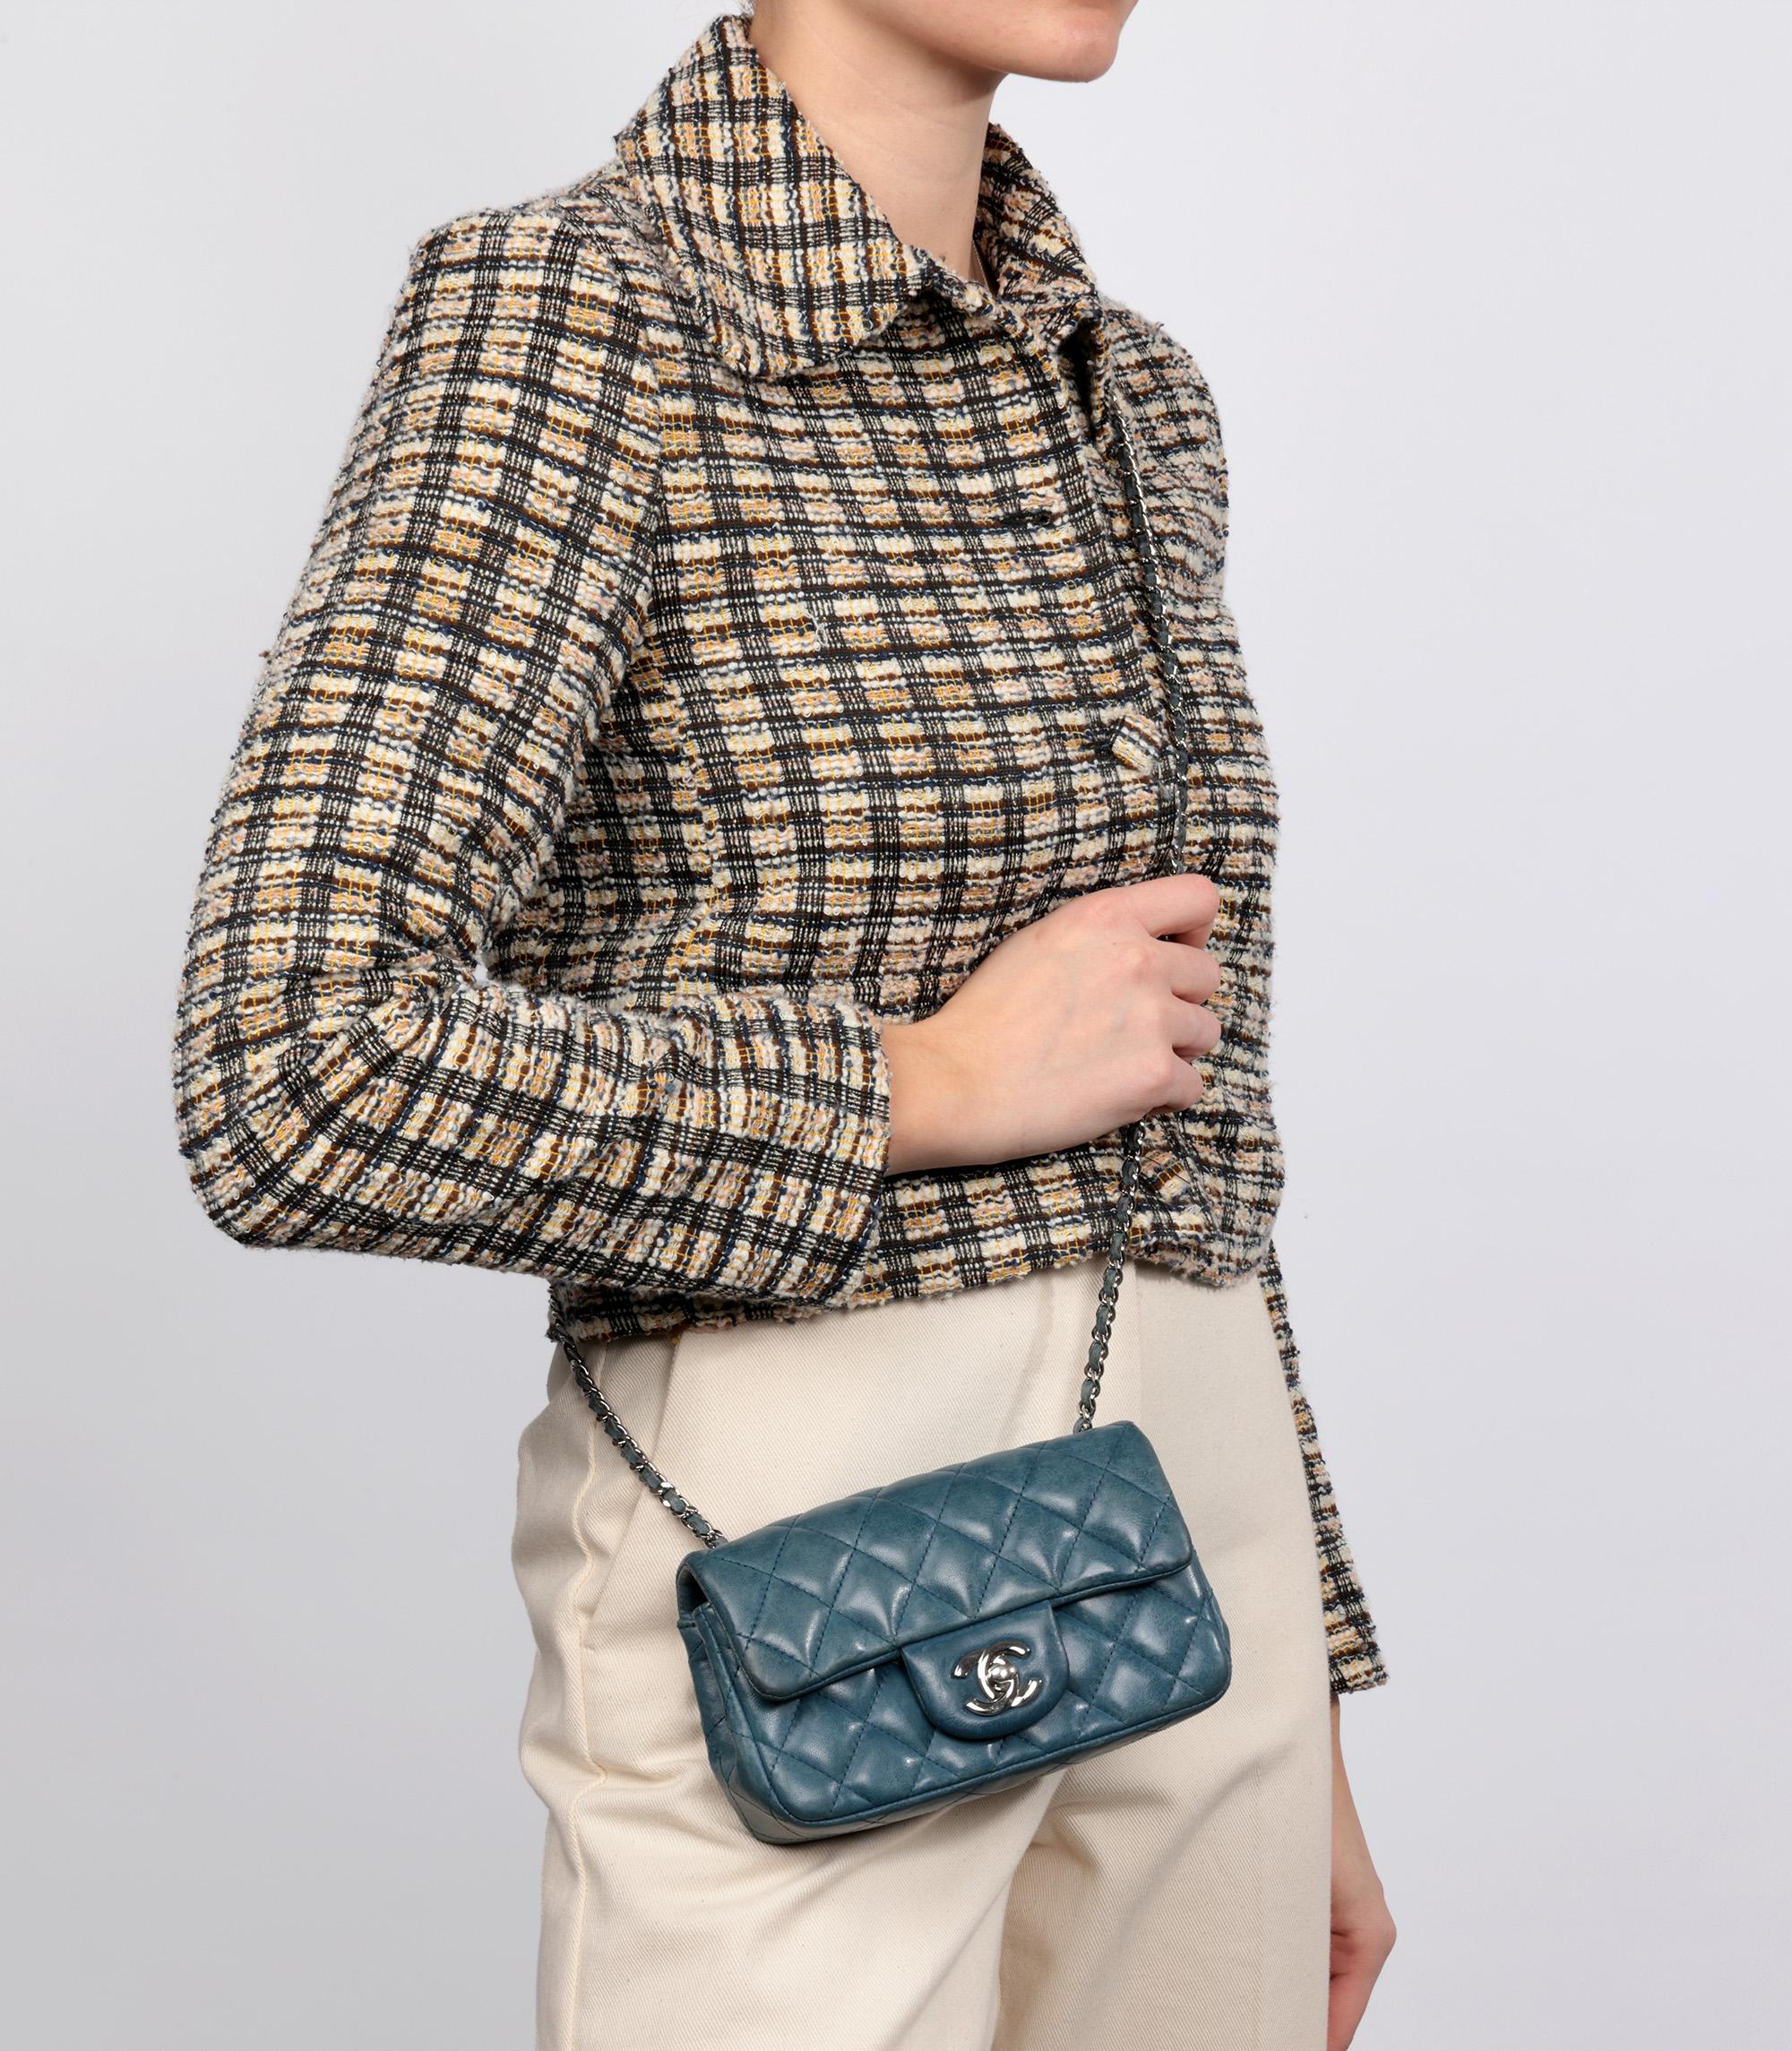 Chanel Teal gesteppt gealtert Lammfell Mini rechteckige Klappe Tasche

Marke- Chanel
Modell- Mini Rectangular Flap Bag
Produkttyp- Umhängetasche, Schulter
Seriennummer - 17******
Alter- Circa 2012
Begleitet von - Chanel Staubbeutel,